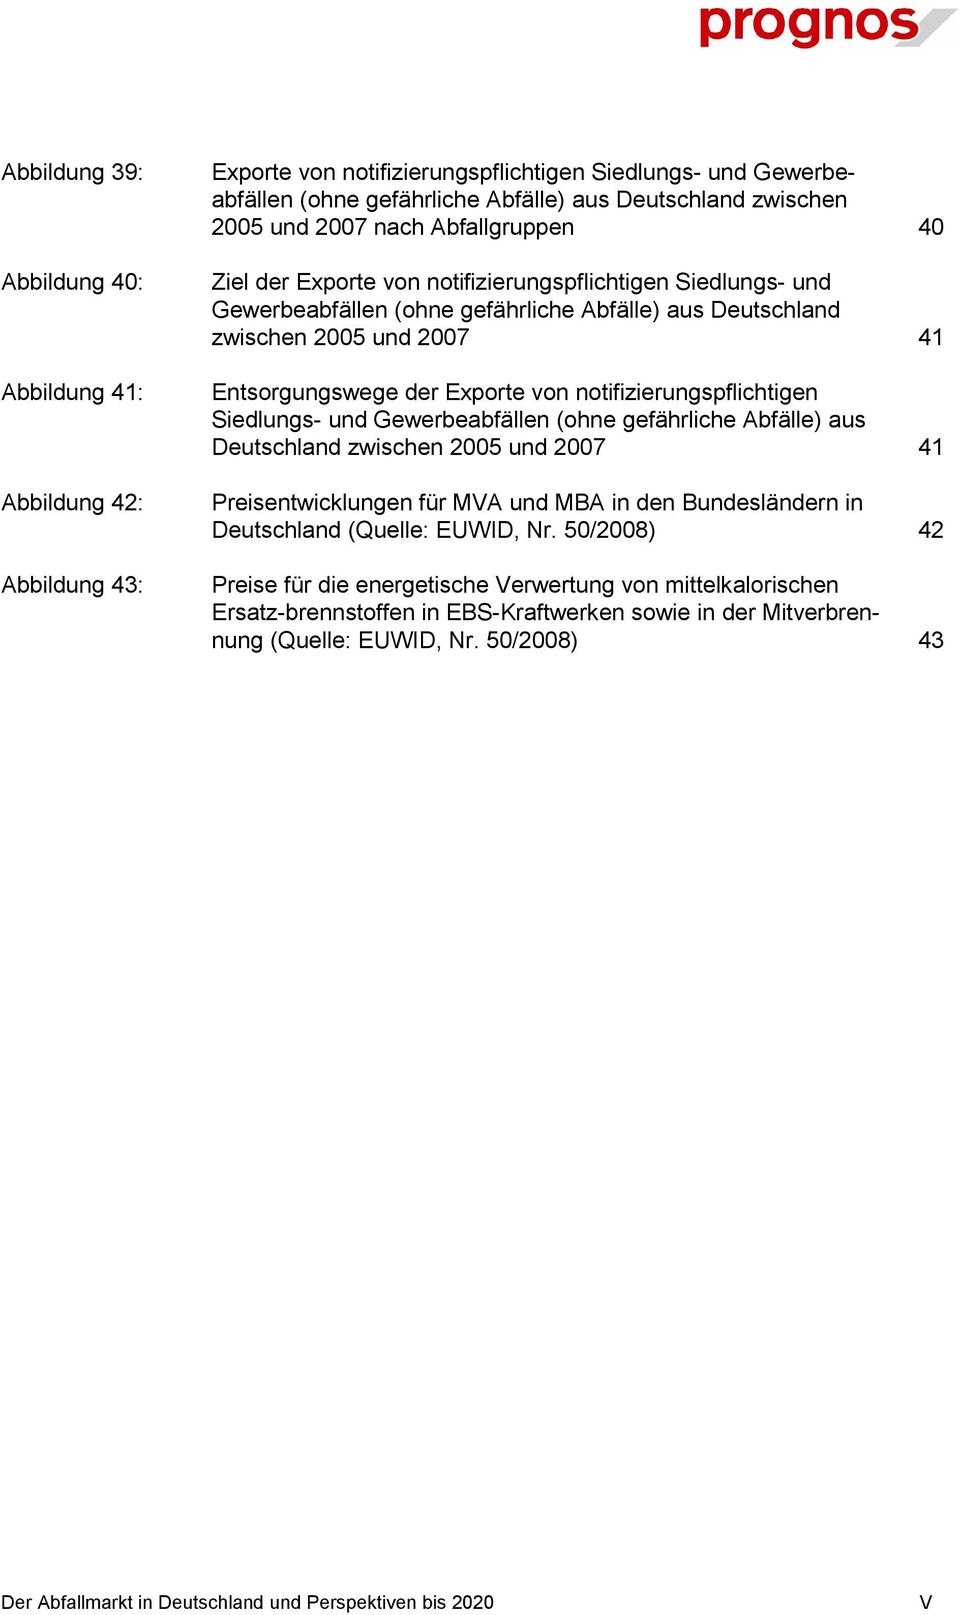 Exporte von notifizierungspflichtigen Siedlungs- und Gewerbeabfällen (ohne gefährliche Abfälle) aus Deutschland zwischen 2005 und 2007 41 Preisentwicklungen für MVA und MBA in den Bundesländern in